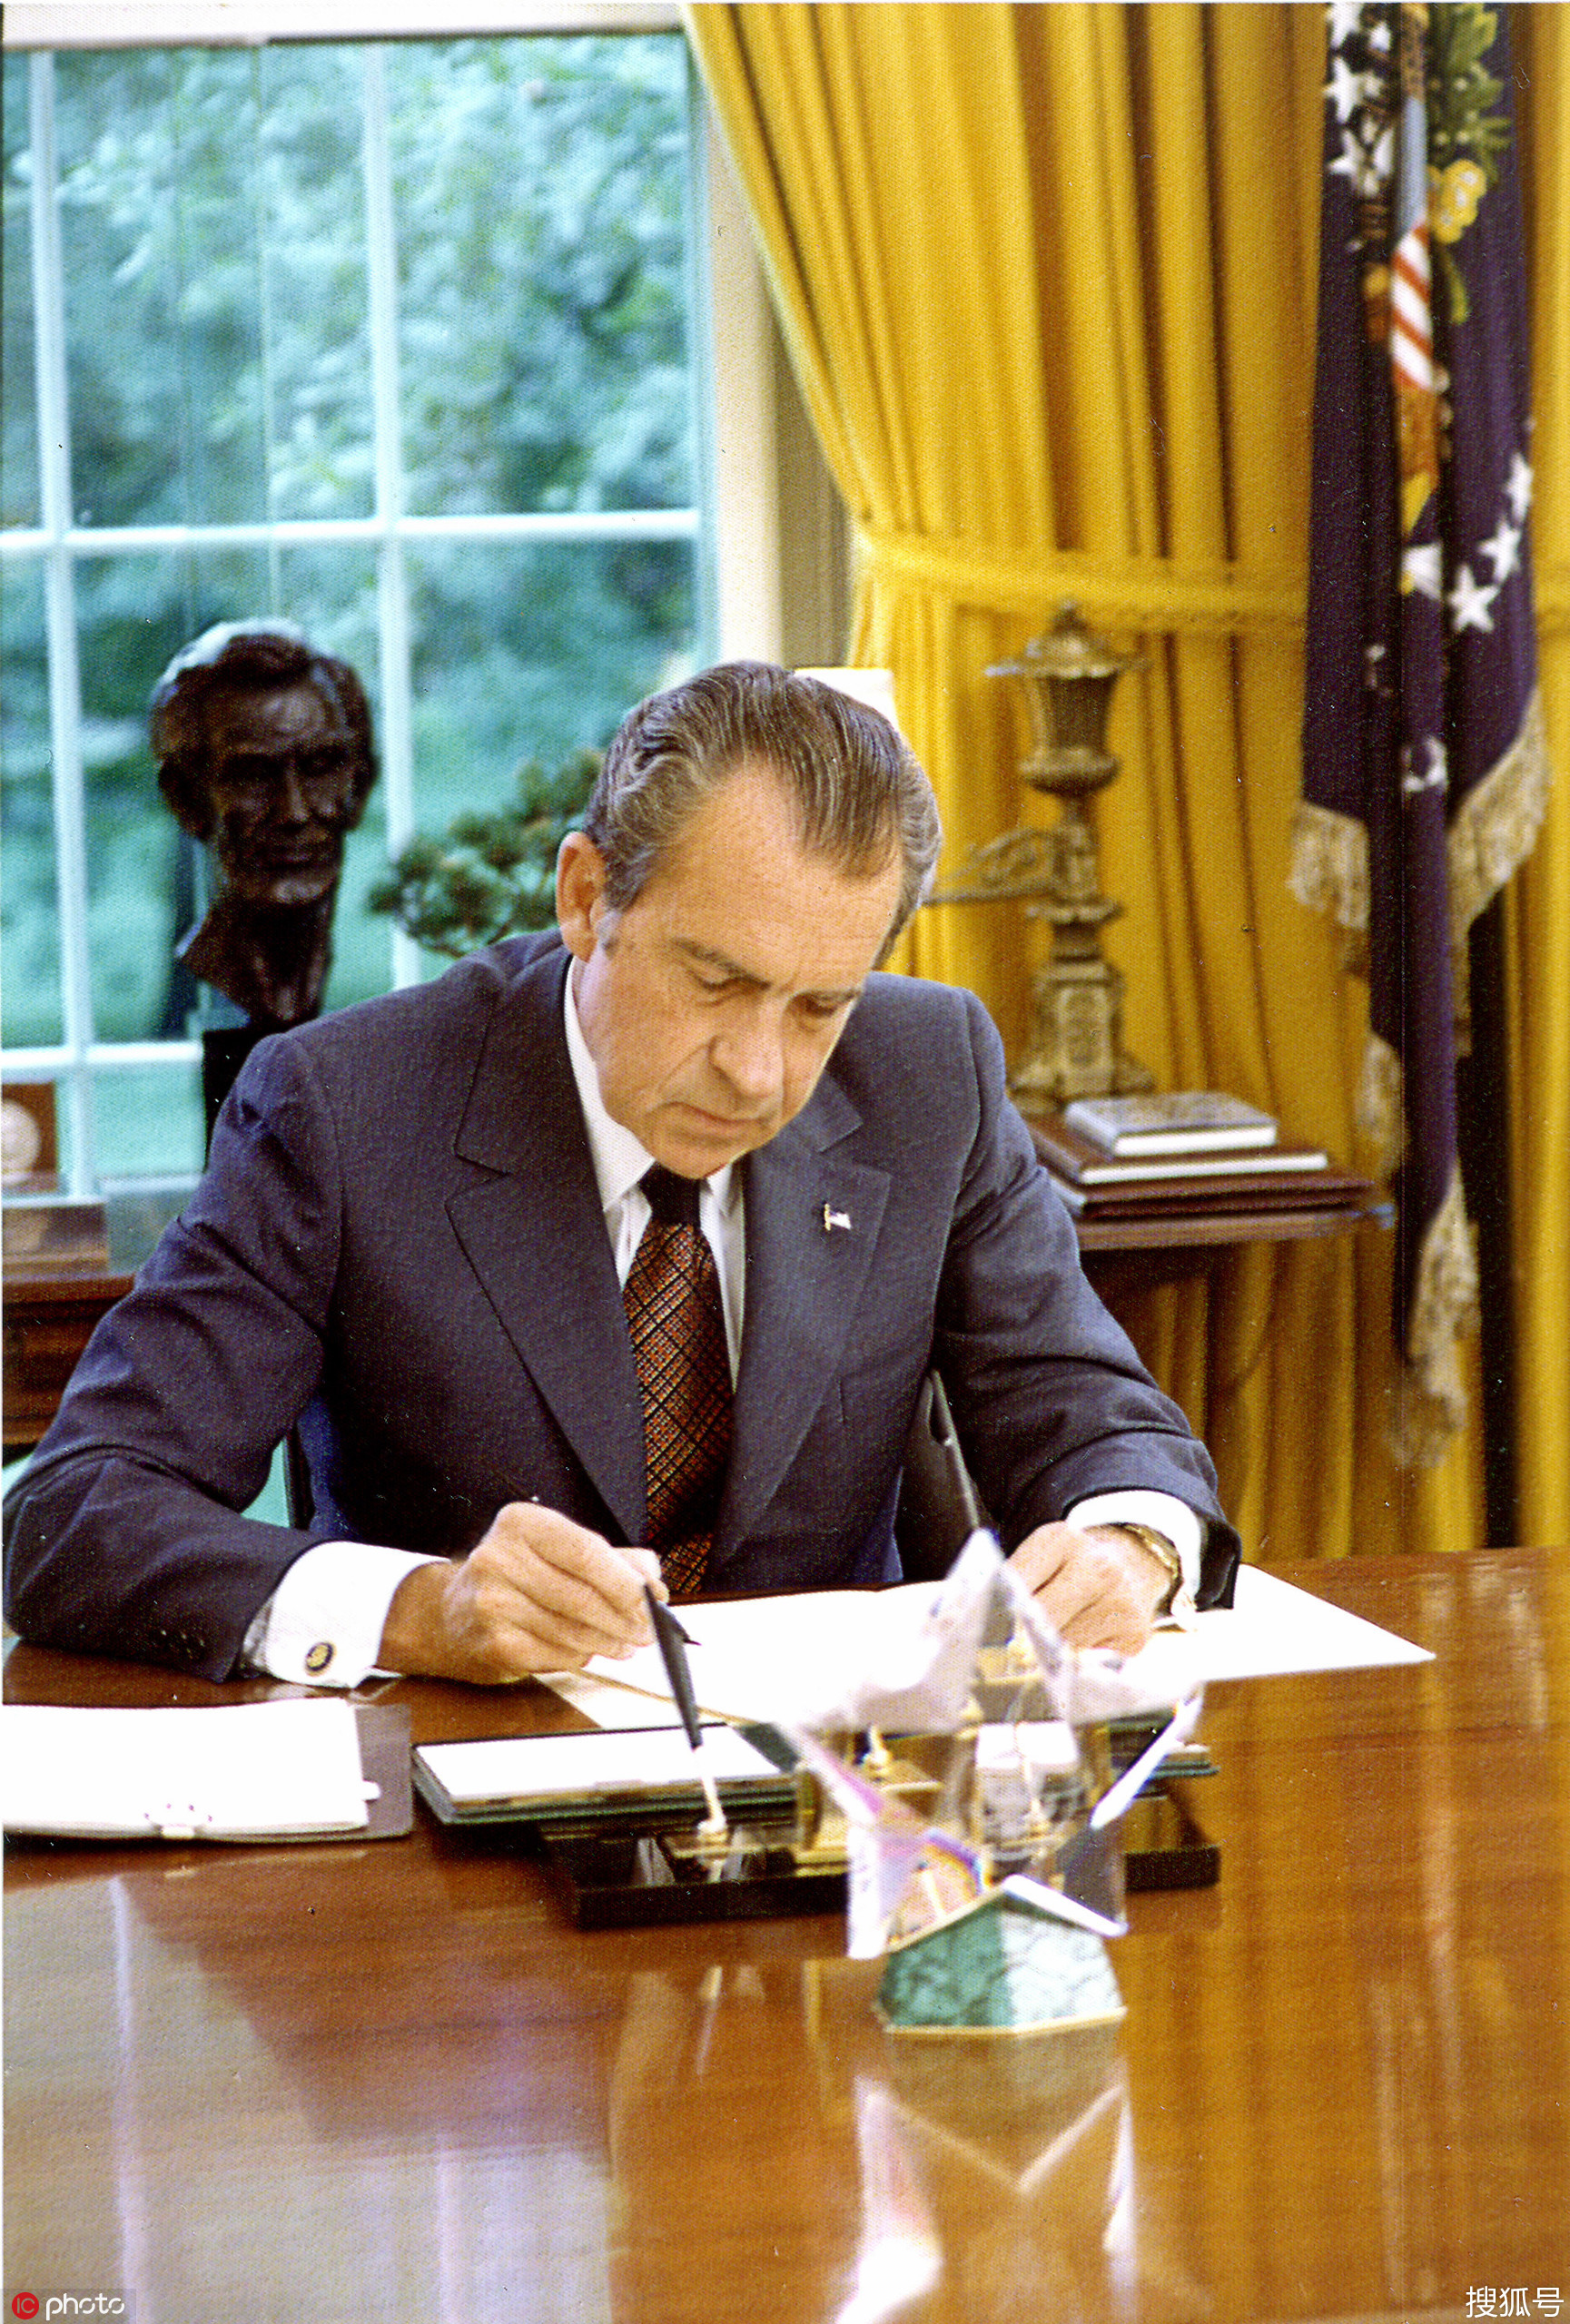 尼克松:首位在任期间访华的美国总统